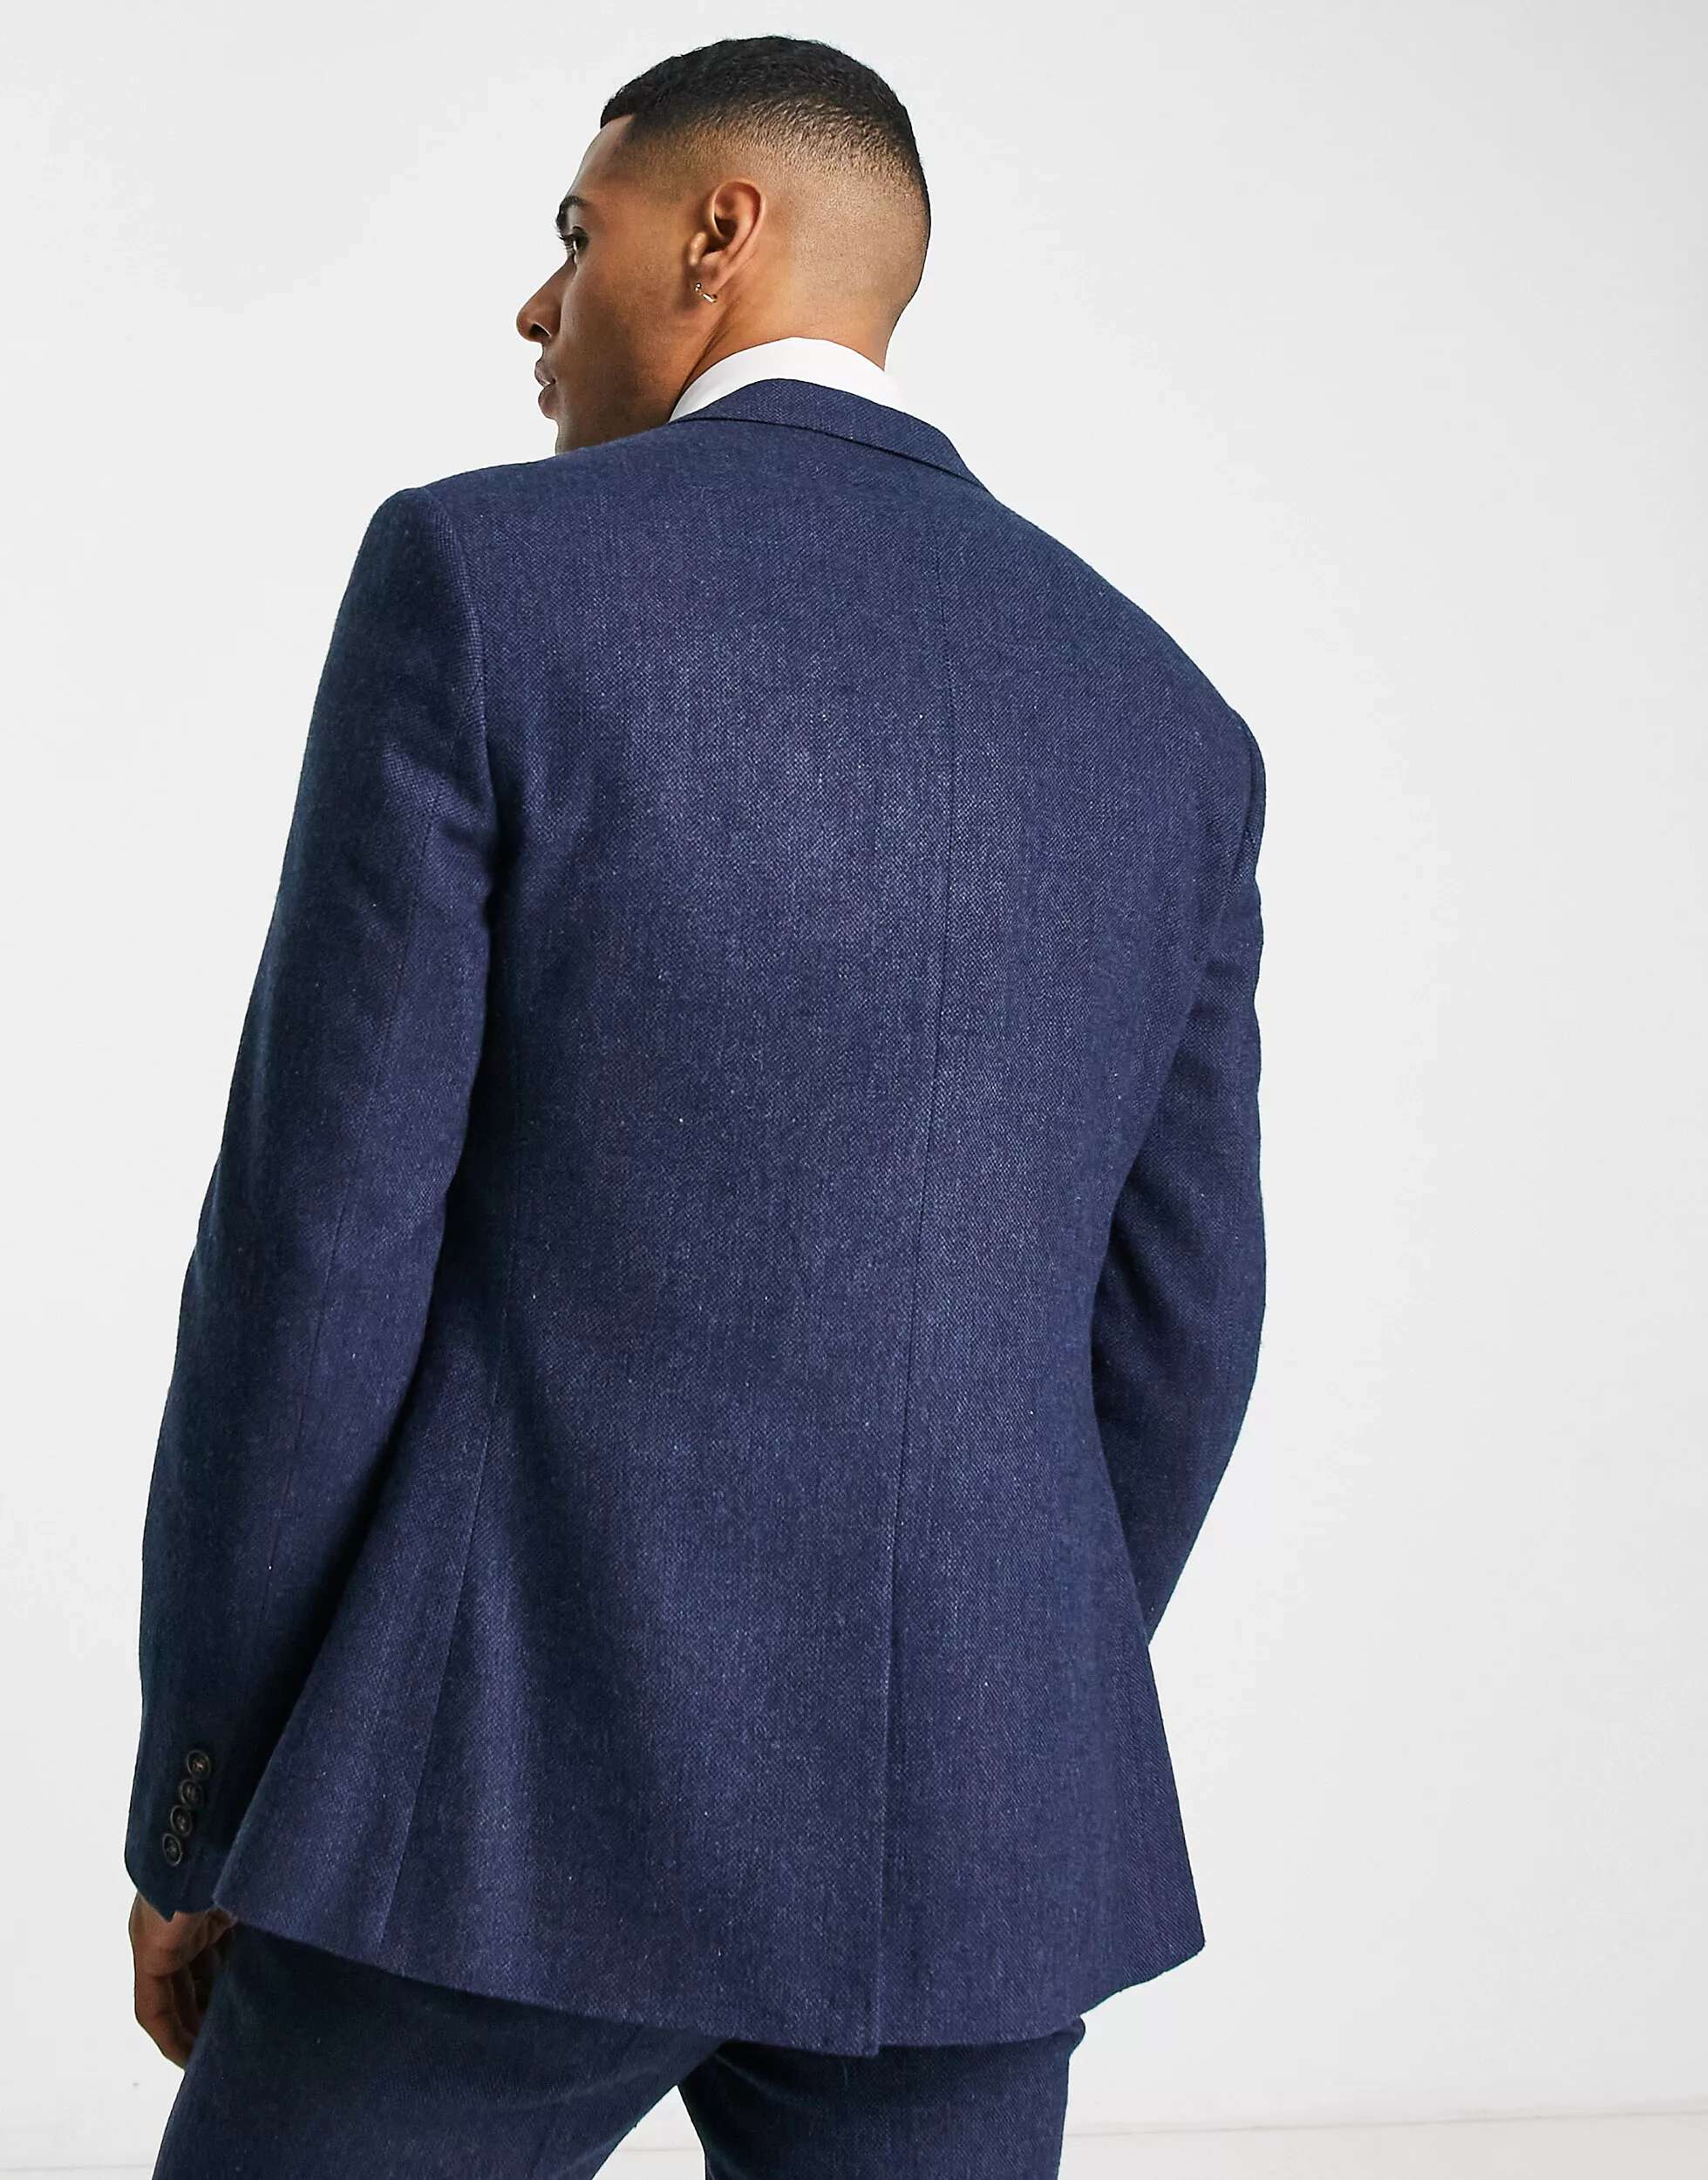 Свадебный пиджак скинни из смесовой шерсти ASOS в плетении корзинчатого цвета цвета индиго